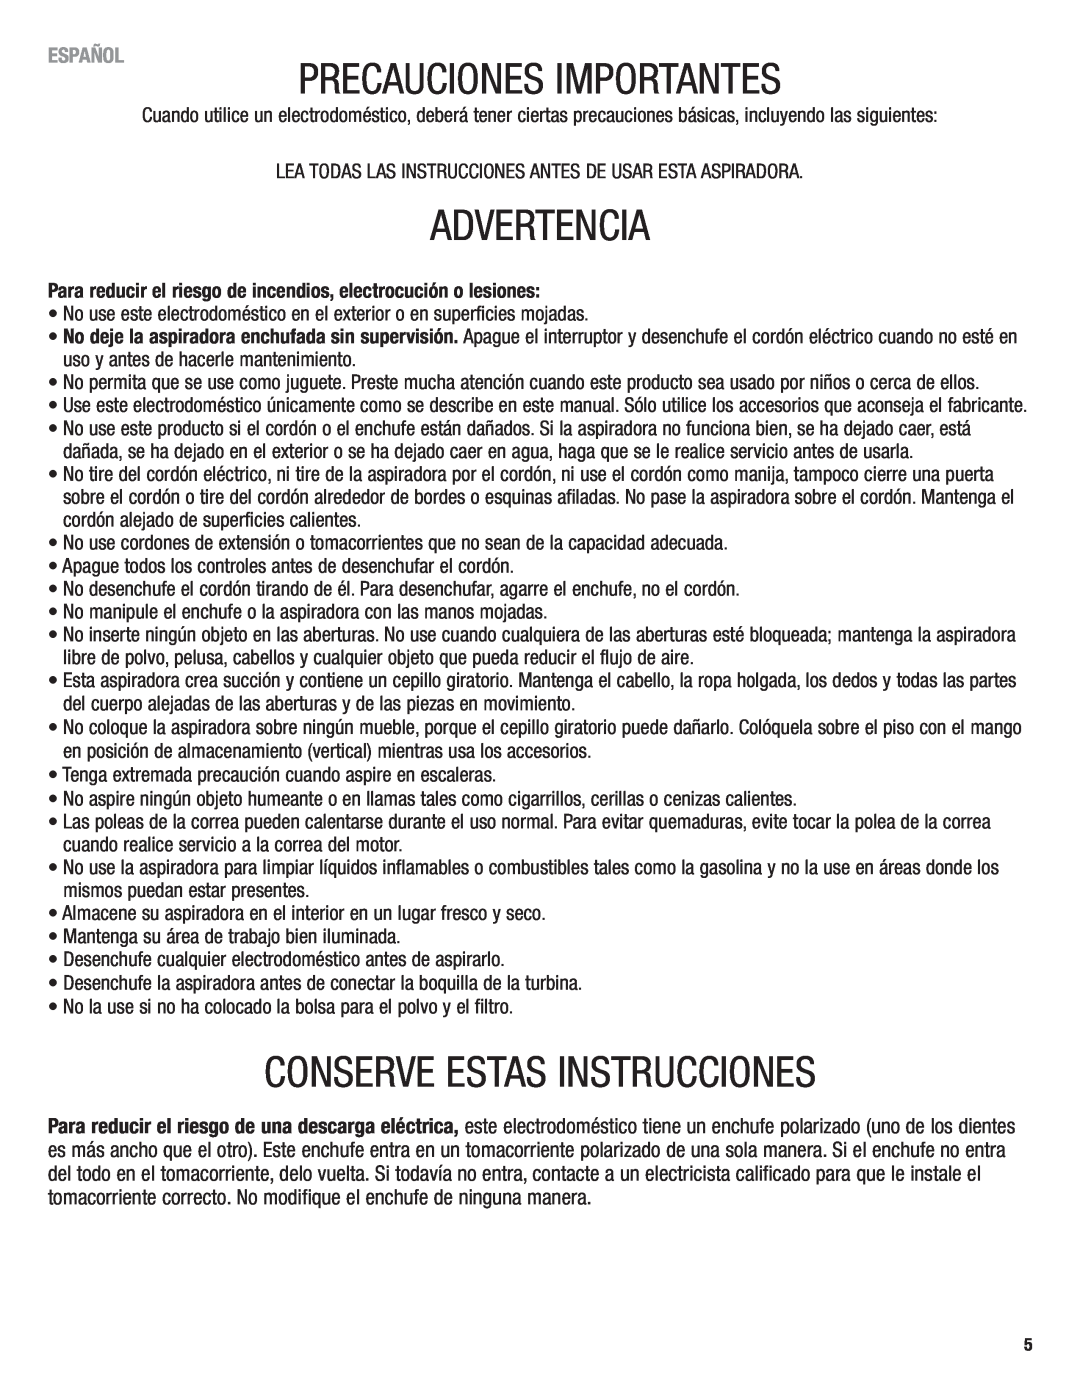 Eureka 2940 manual Precauciones Importantes, Advertencia, Conserve Estas Instrucciones, Español 